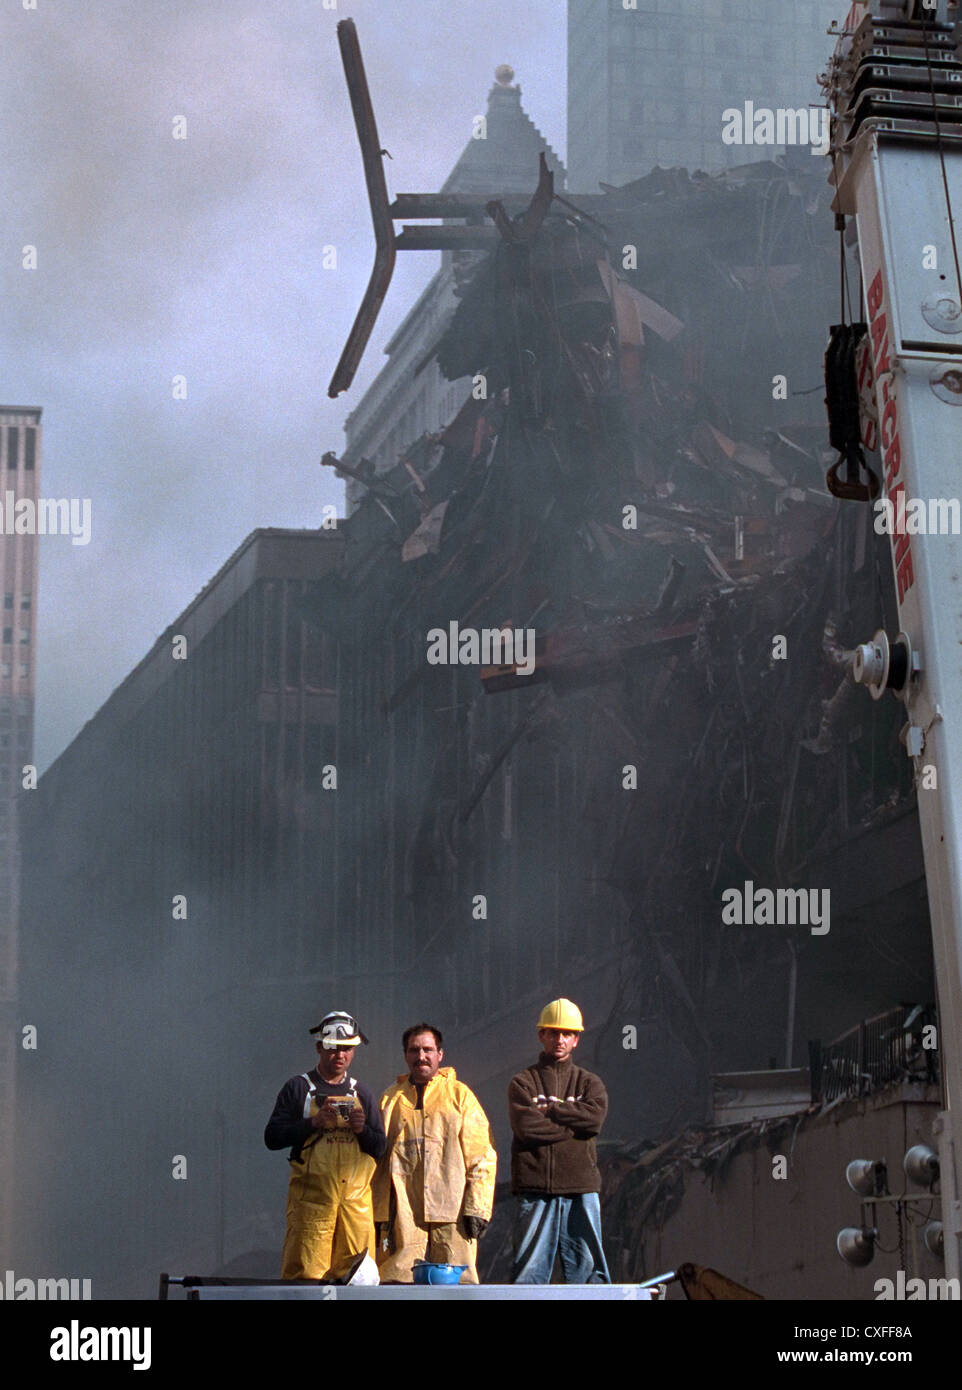 Vigili del fuoco guarda su come presidente degli Stati Uniti George Bush risolve i soccorritori in distrutto il World Trade Center Settembre 14, 2001 a New York City. Bussola di recupero indirizzata ai lavoratori e raccolse la nazione a seguito di attentati terroristici. Foto Stock